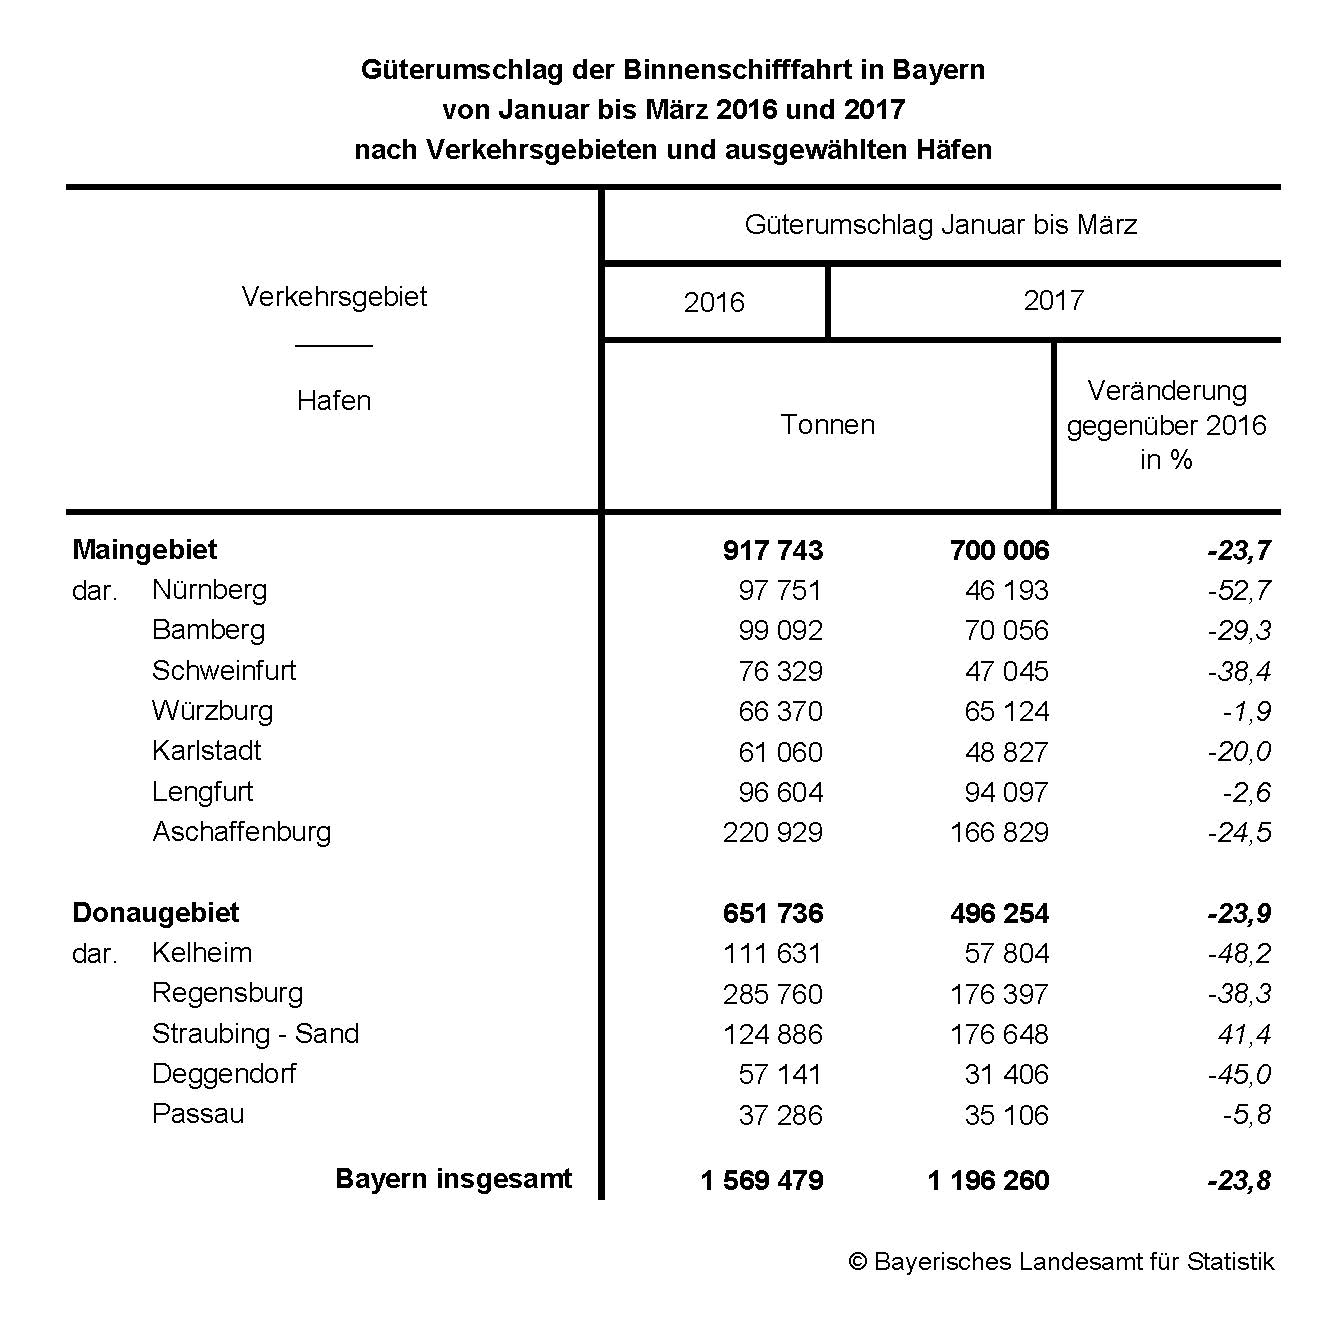 Güterumschlag der Binnenschifffahrt in Bayern von Januar bis März 2016 und 2017 nach Verkehrsgebieten und ausgewählten Häfen